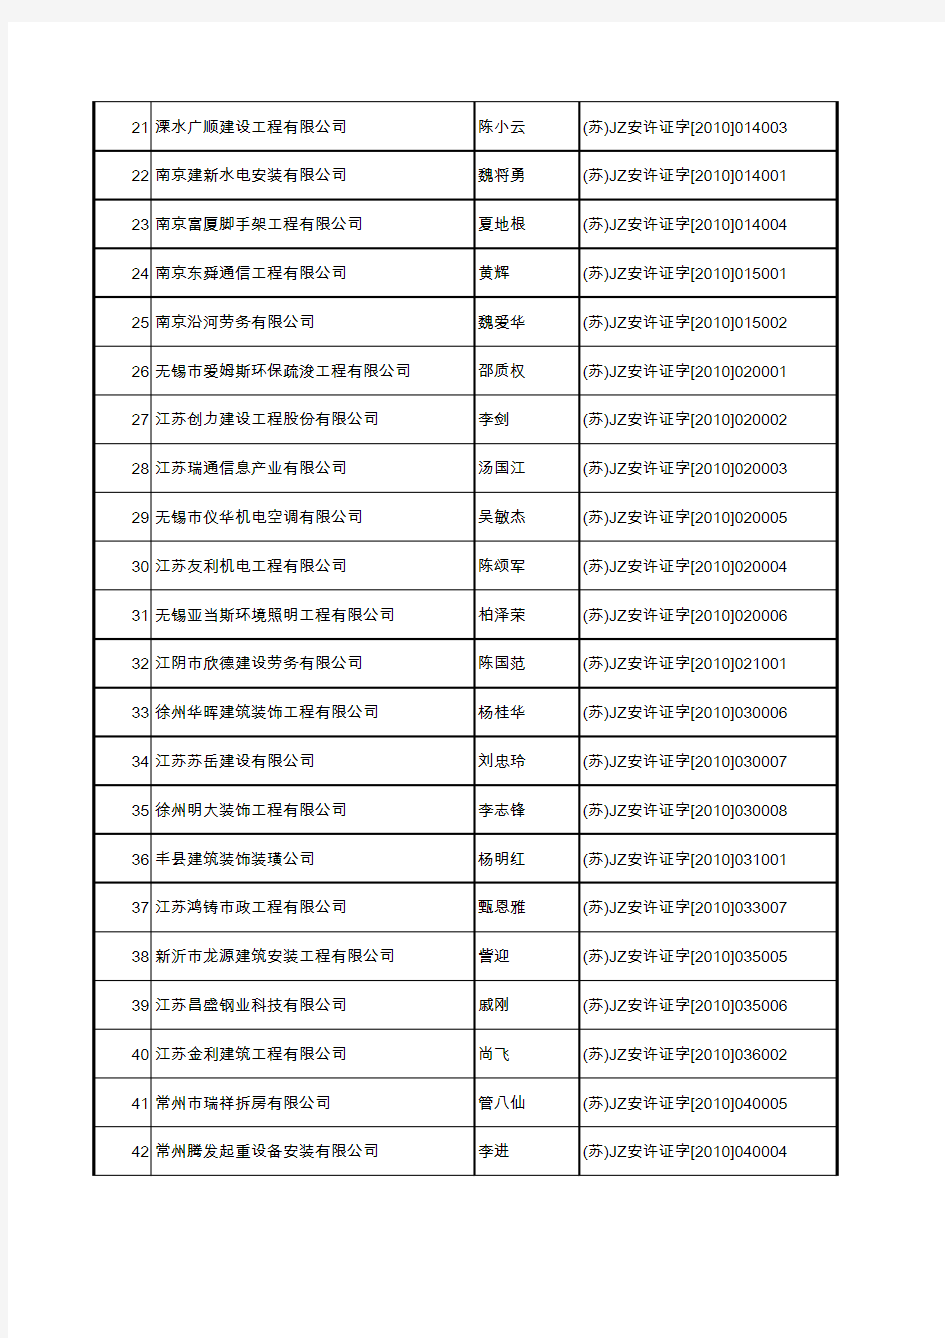 江苏省建筑施工企业安全生产许可证名单(10年第2批共131家)